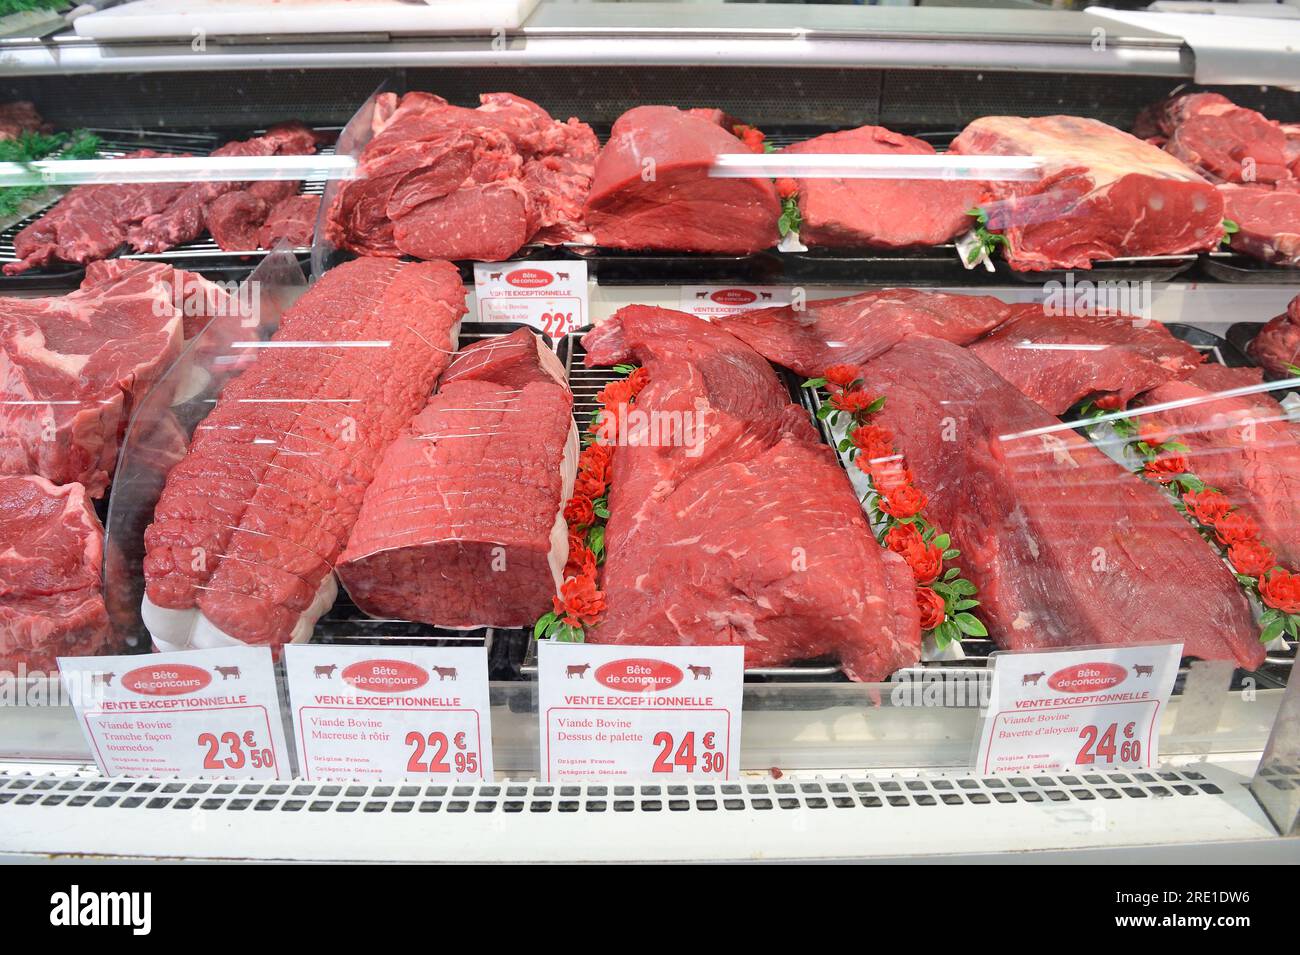 Viande rouge de producteurs locaux vendue dans le département boucher d'un supermarché Carrefour Market. Viande de haute qualité Banque D'Images